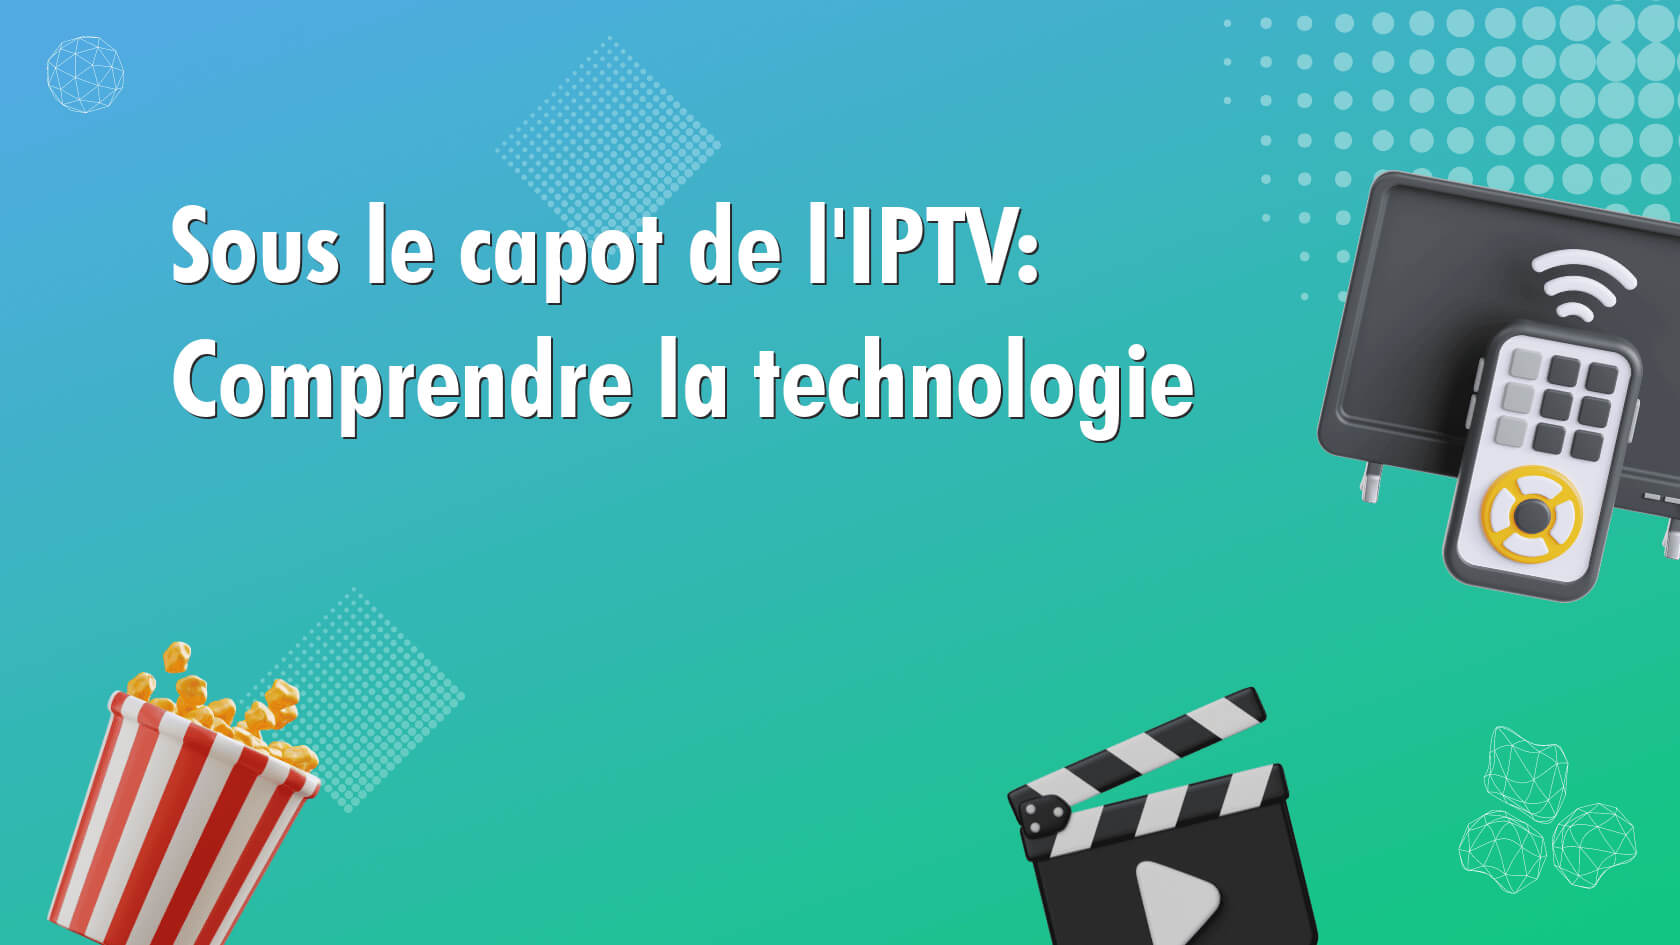 Sous le capot de l’IPTV: Comprendre la technologie